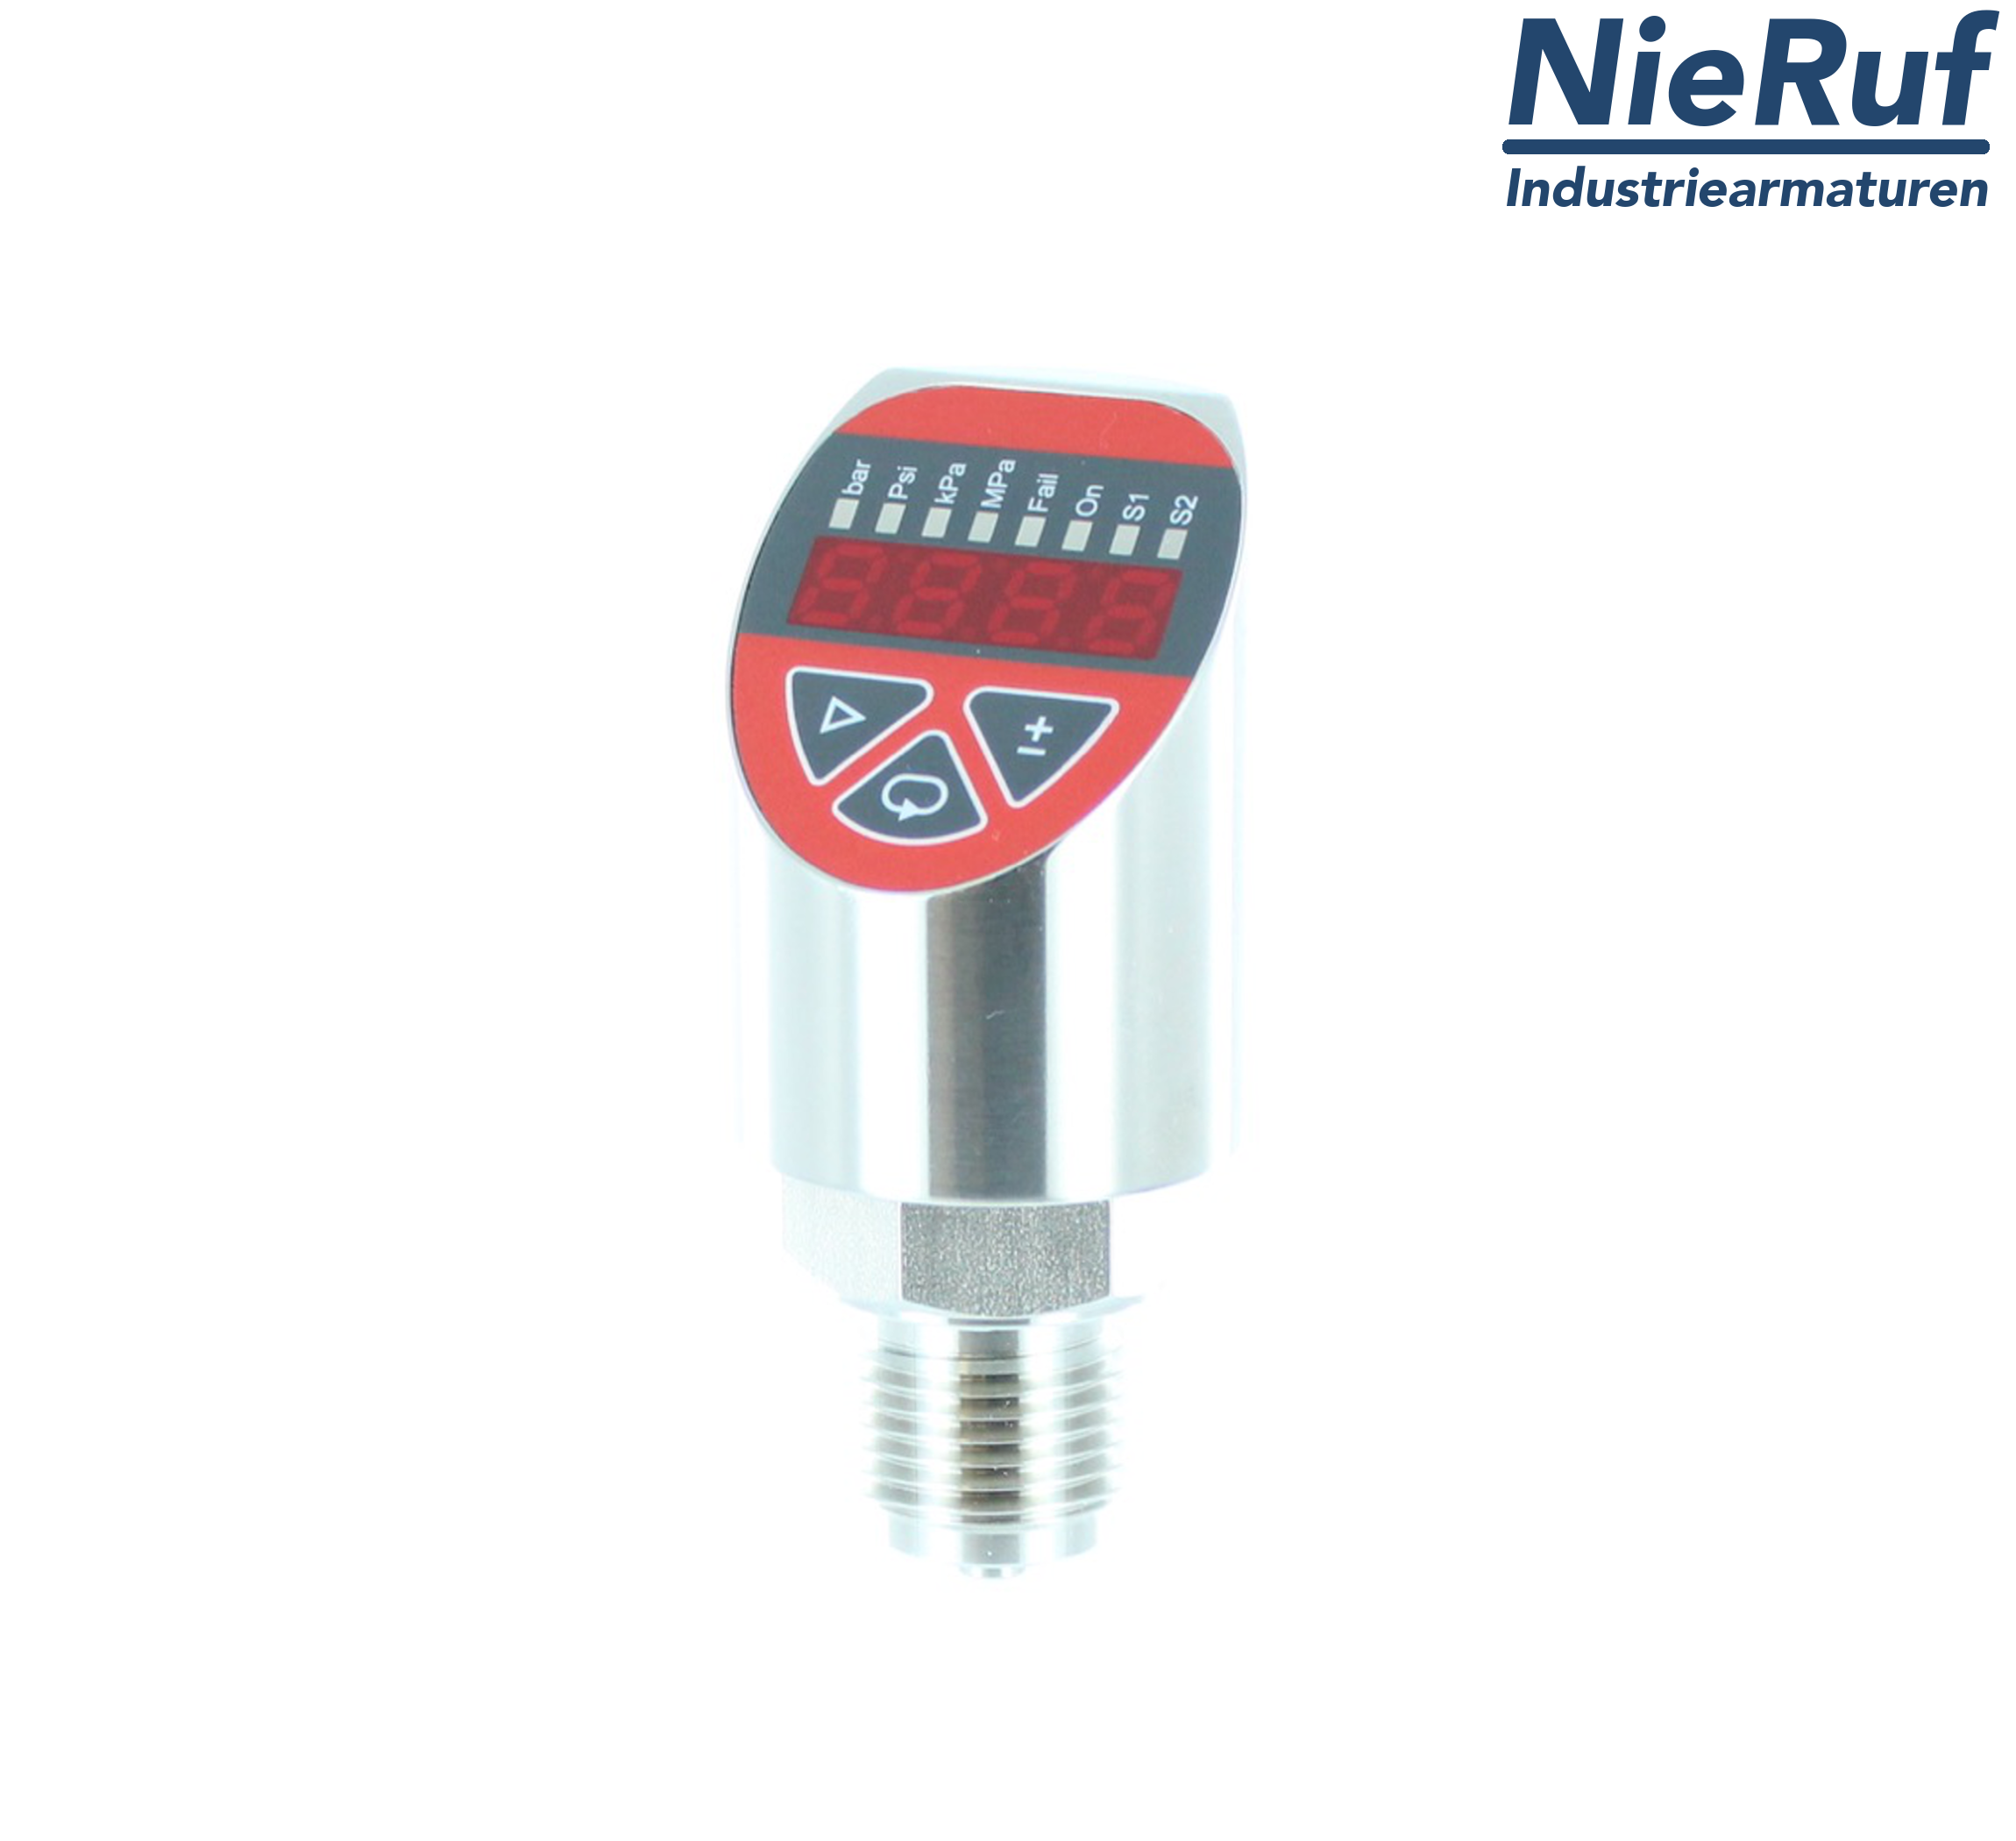 digital pressure sensor G 1/4" B 4-wire: 1xPNP, 1x4 - 20mA FPM 0,0 - 10,0 bar